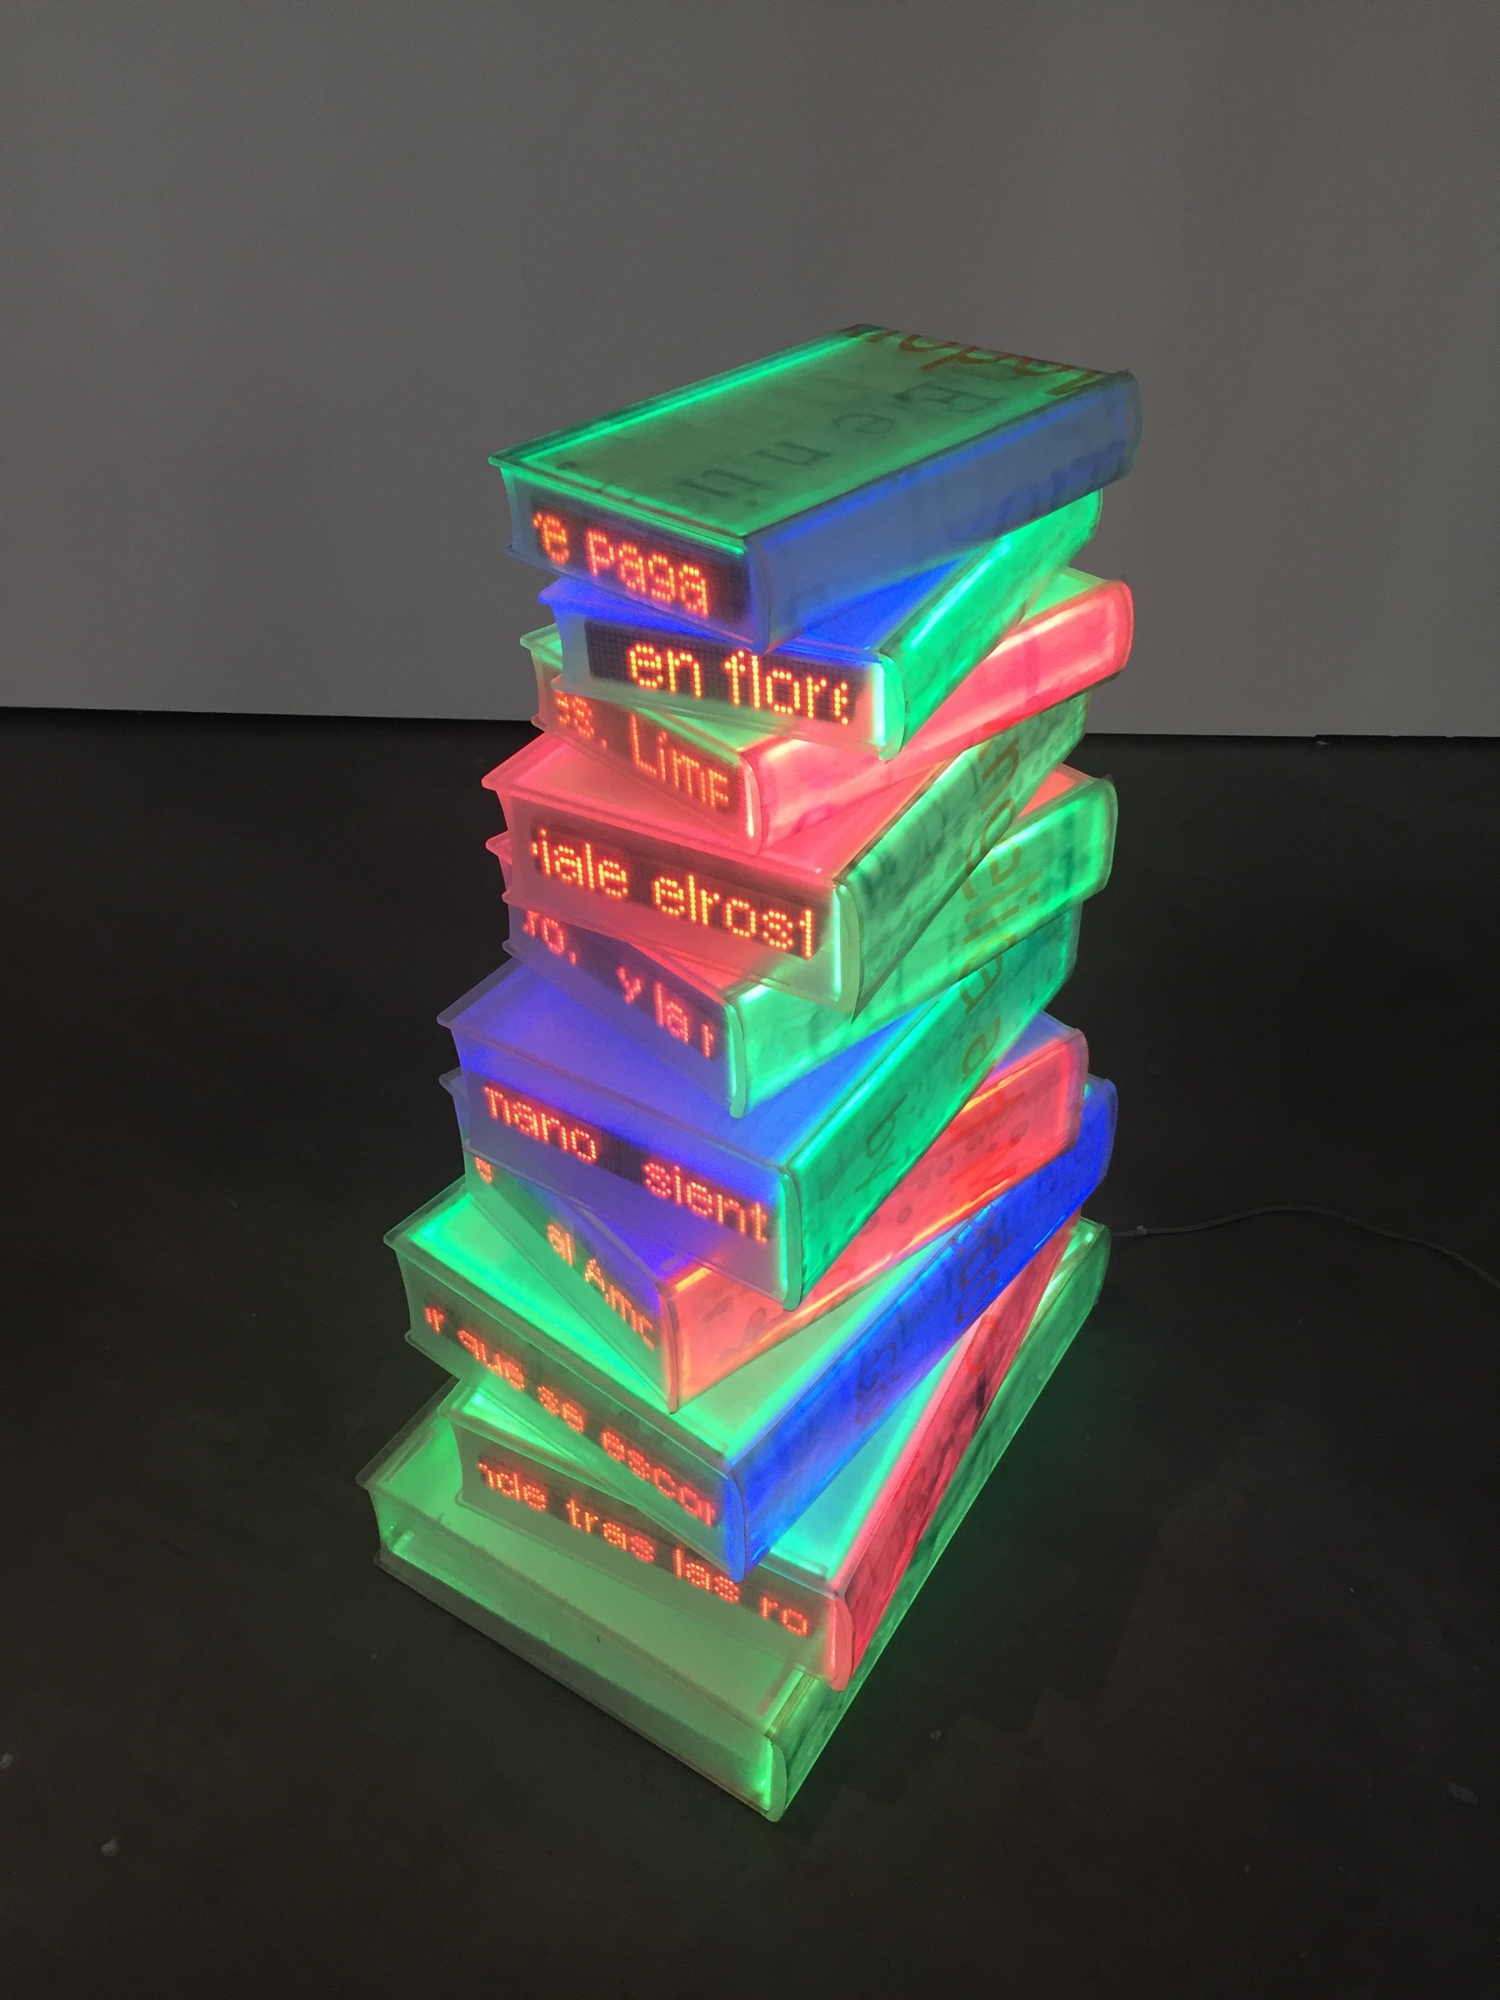 Skulptur aus buchförmigen transparenten Kästen, die bunt beleuchtet sind und an den Kanten mit Laufschrift Inhalte von Büchern darstellen